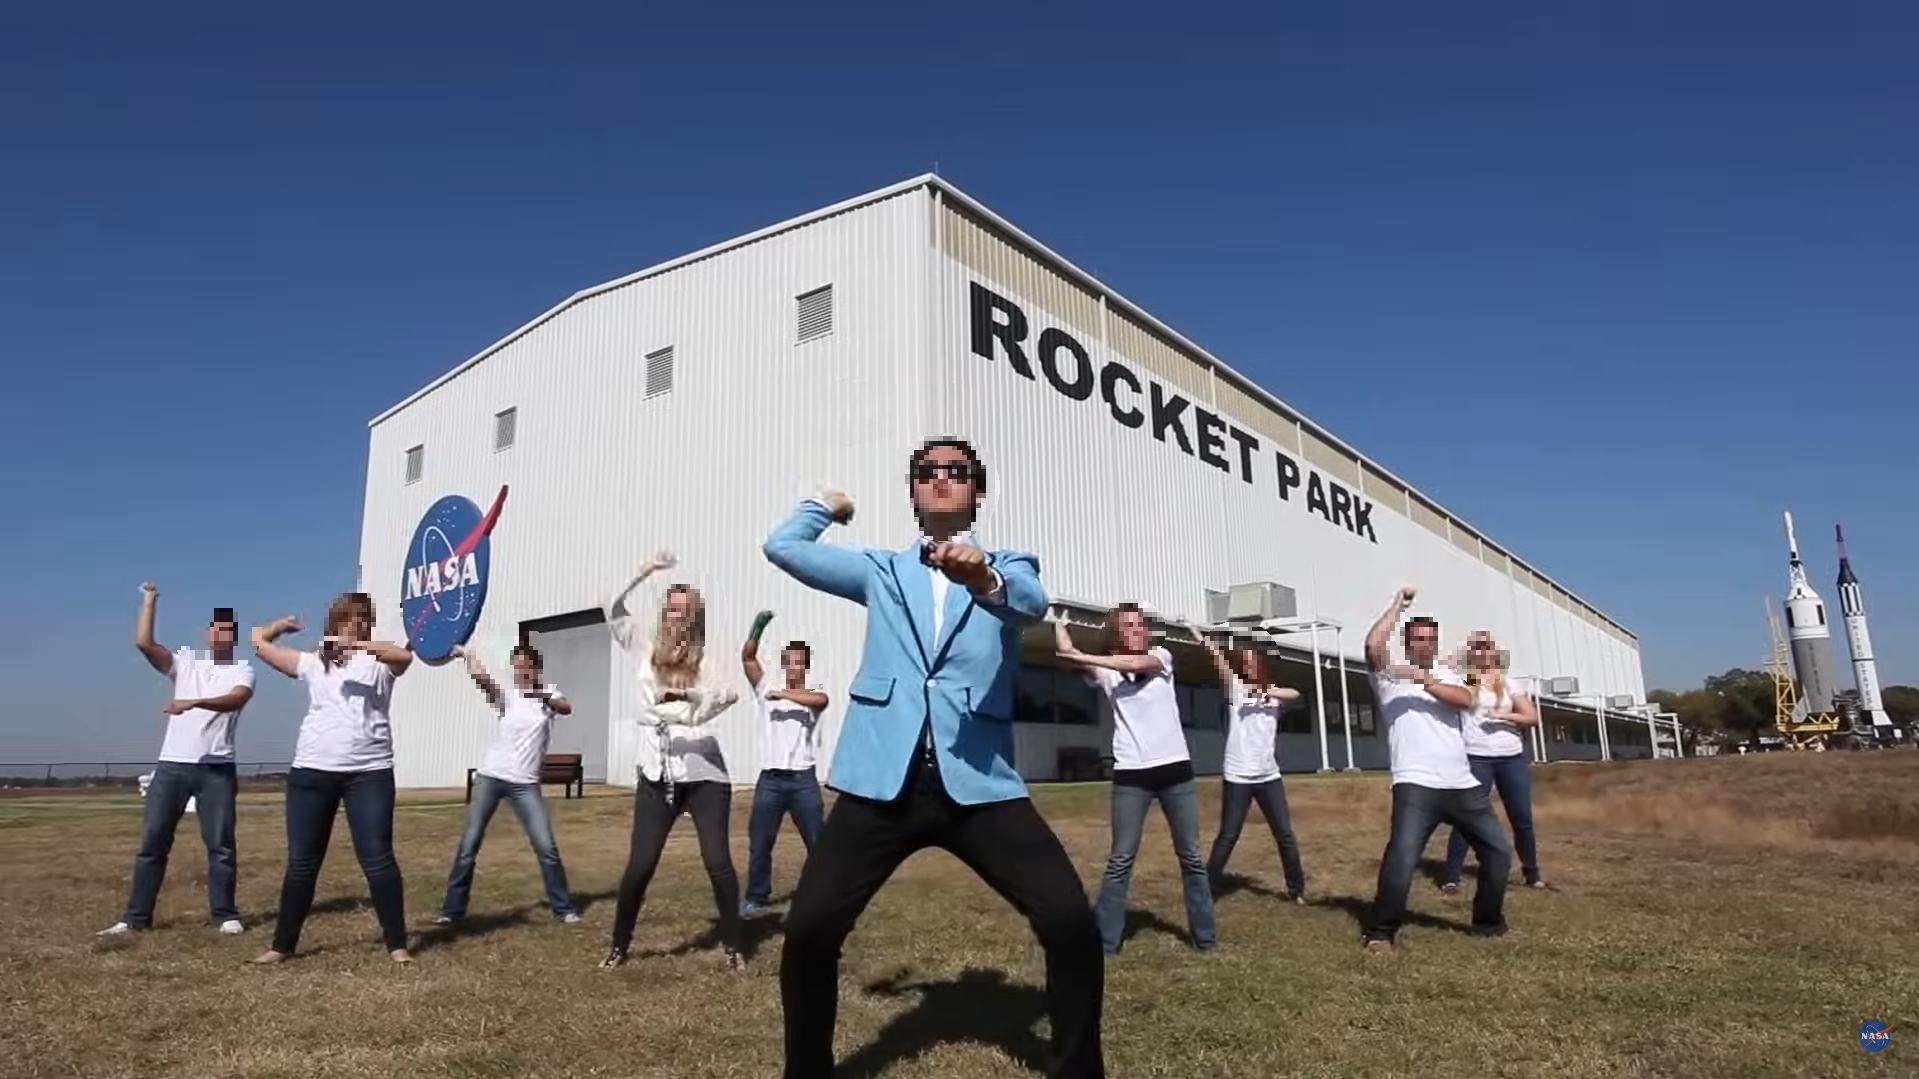 NASA Johnson의 강남스타일 패러디 뮤직 비디오